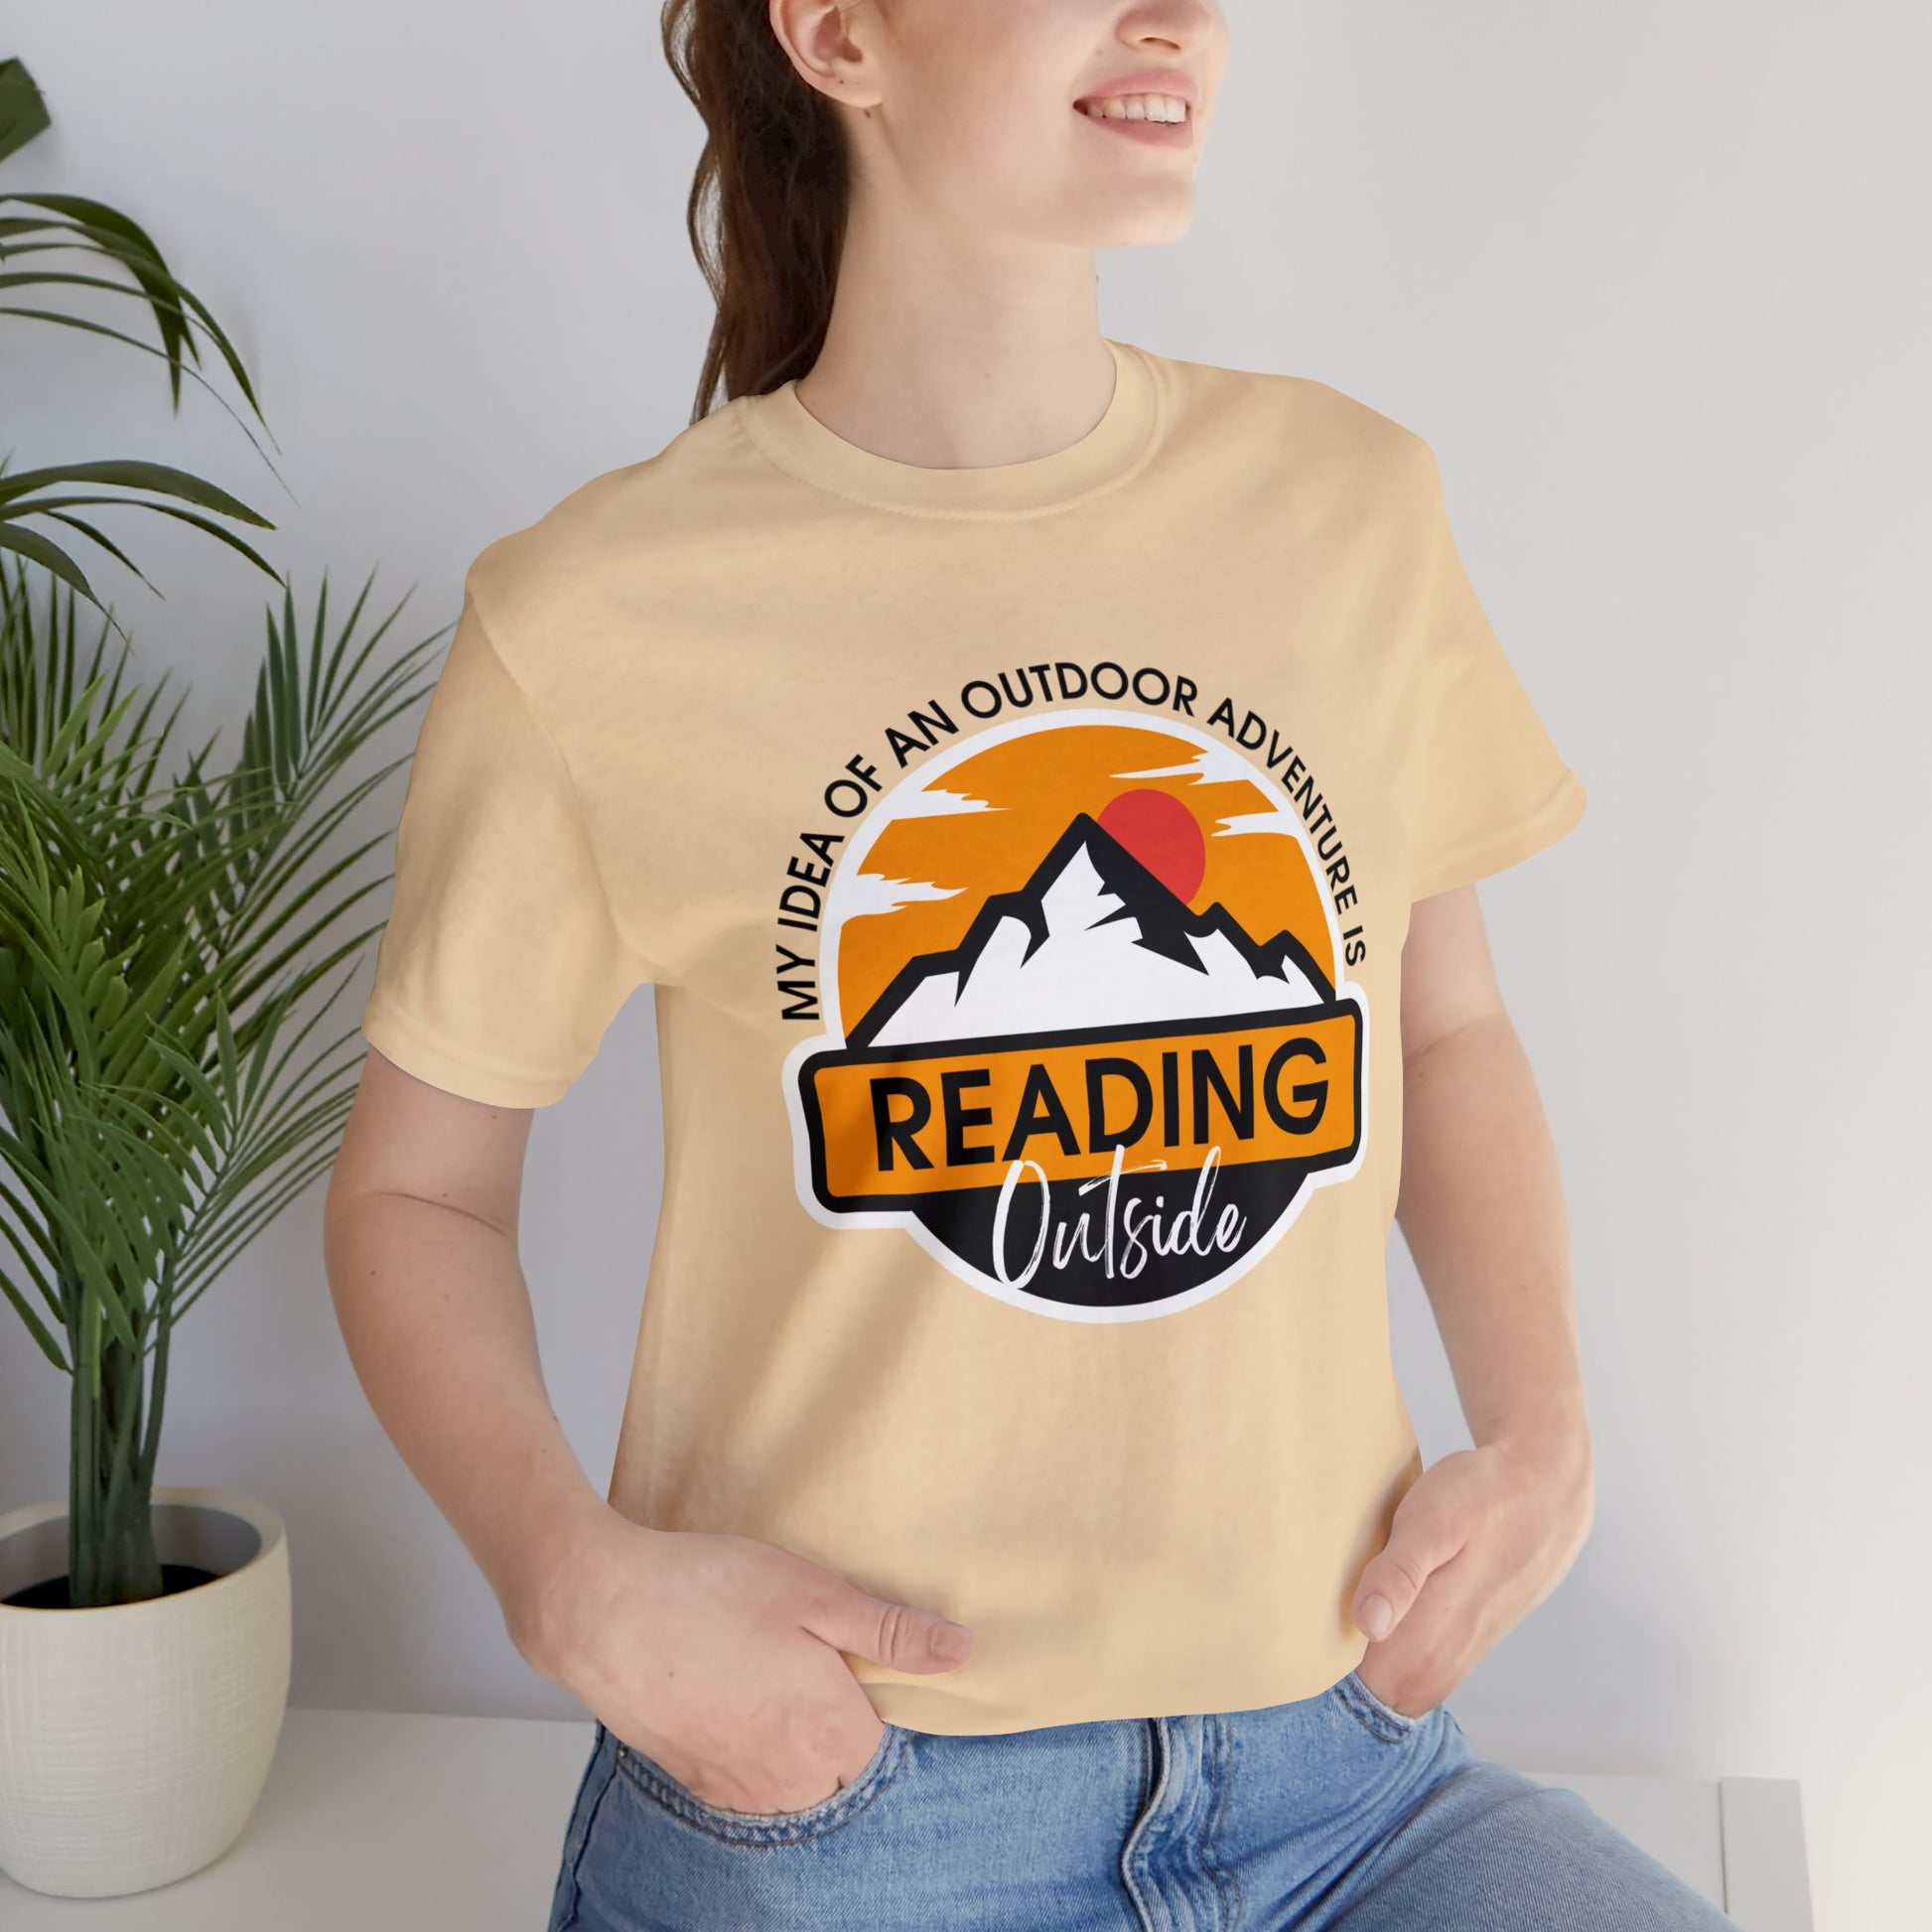 reading tshirt